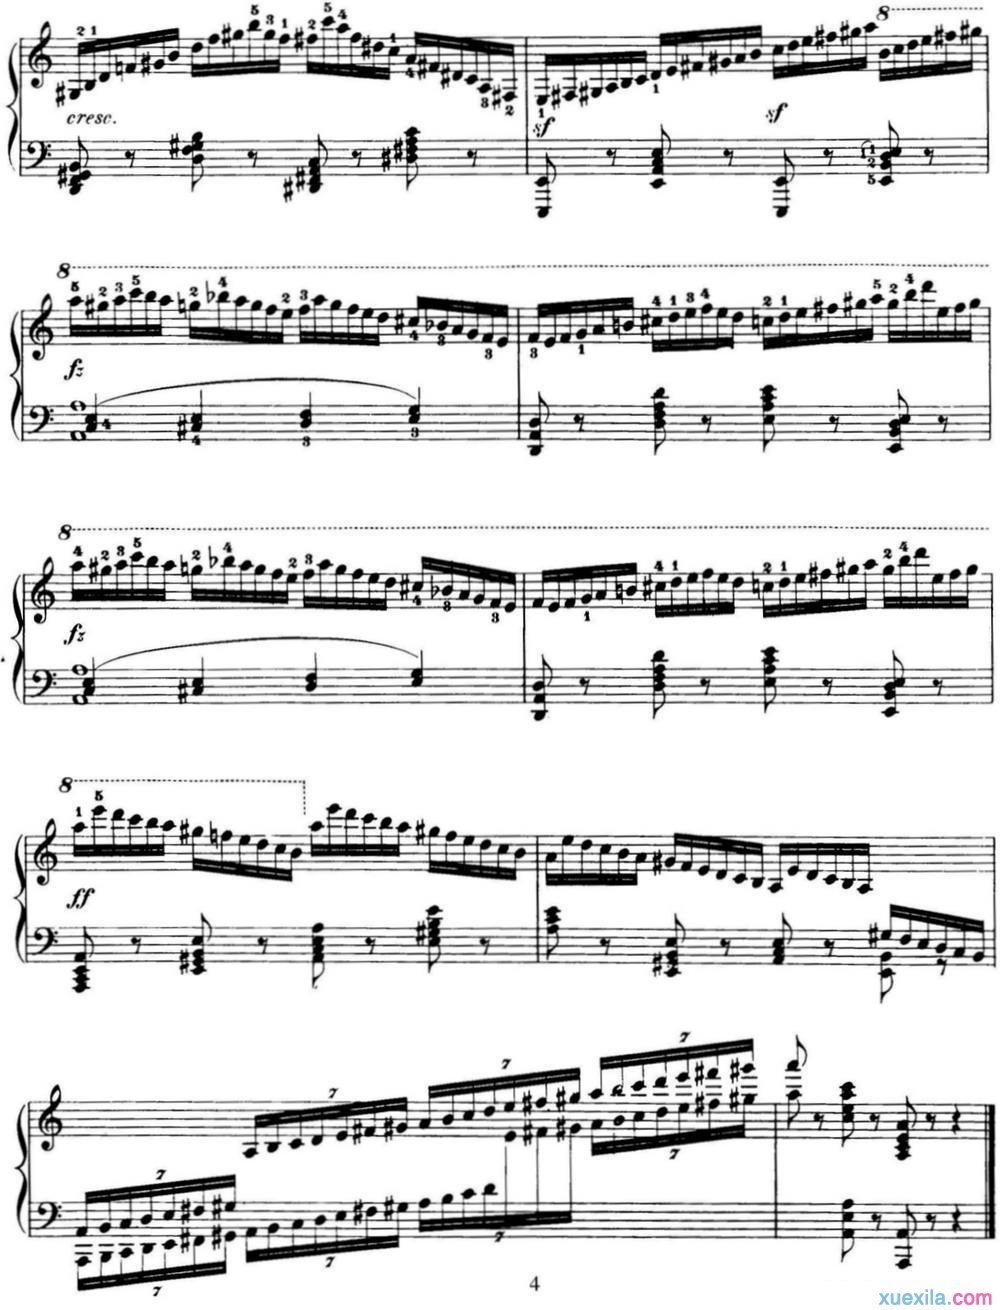 740钢琴手指灵巧技术练习曲17钢琴谱